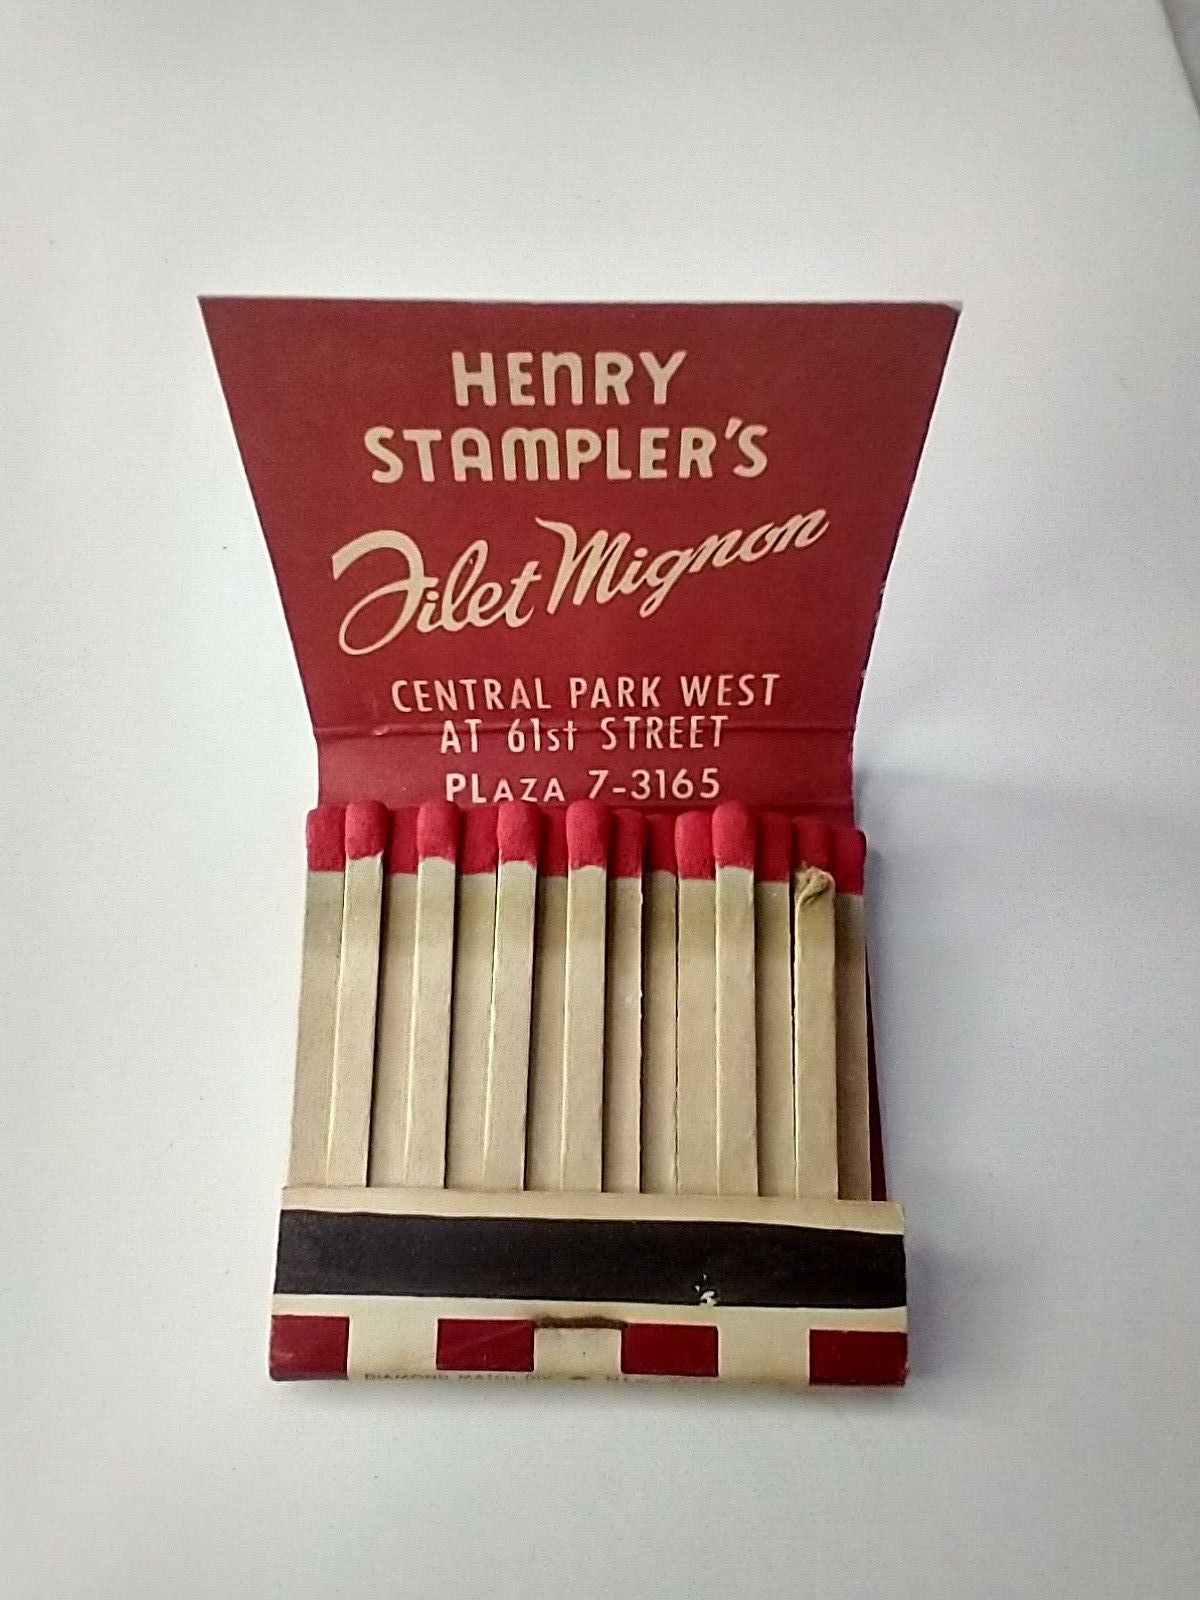 Vintage Henry Stampler's Filet Mignon Central Park West Matchbook Unused